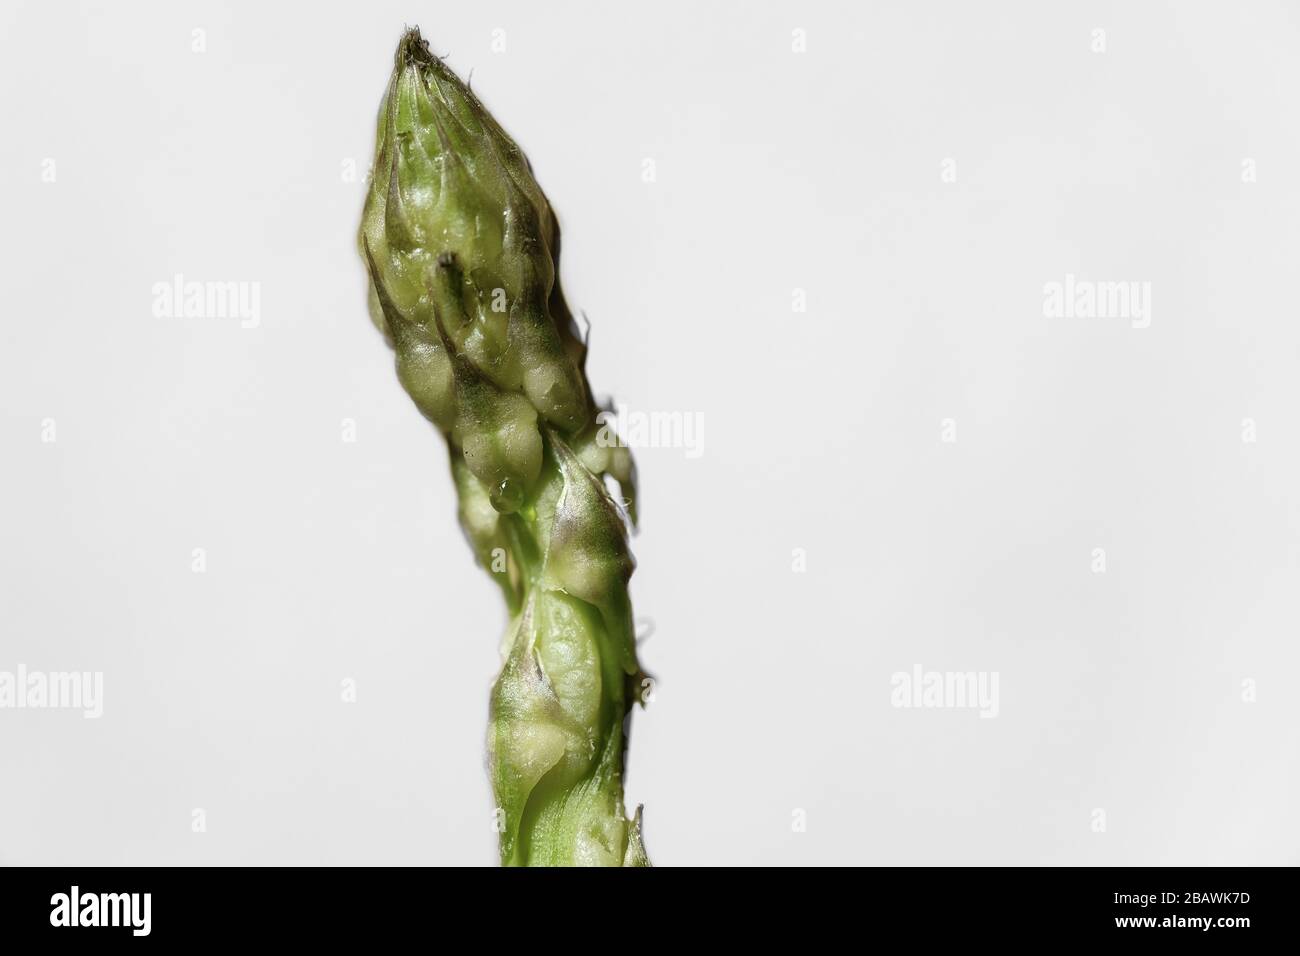 Asparagi italiani selvatici isolati su sfondo luminoso, cibo sano genuino Foto Stock